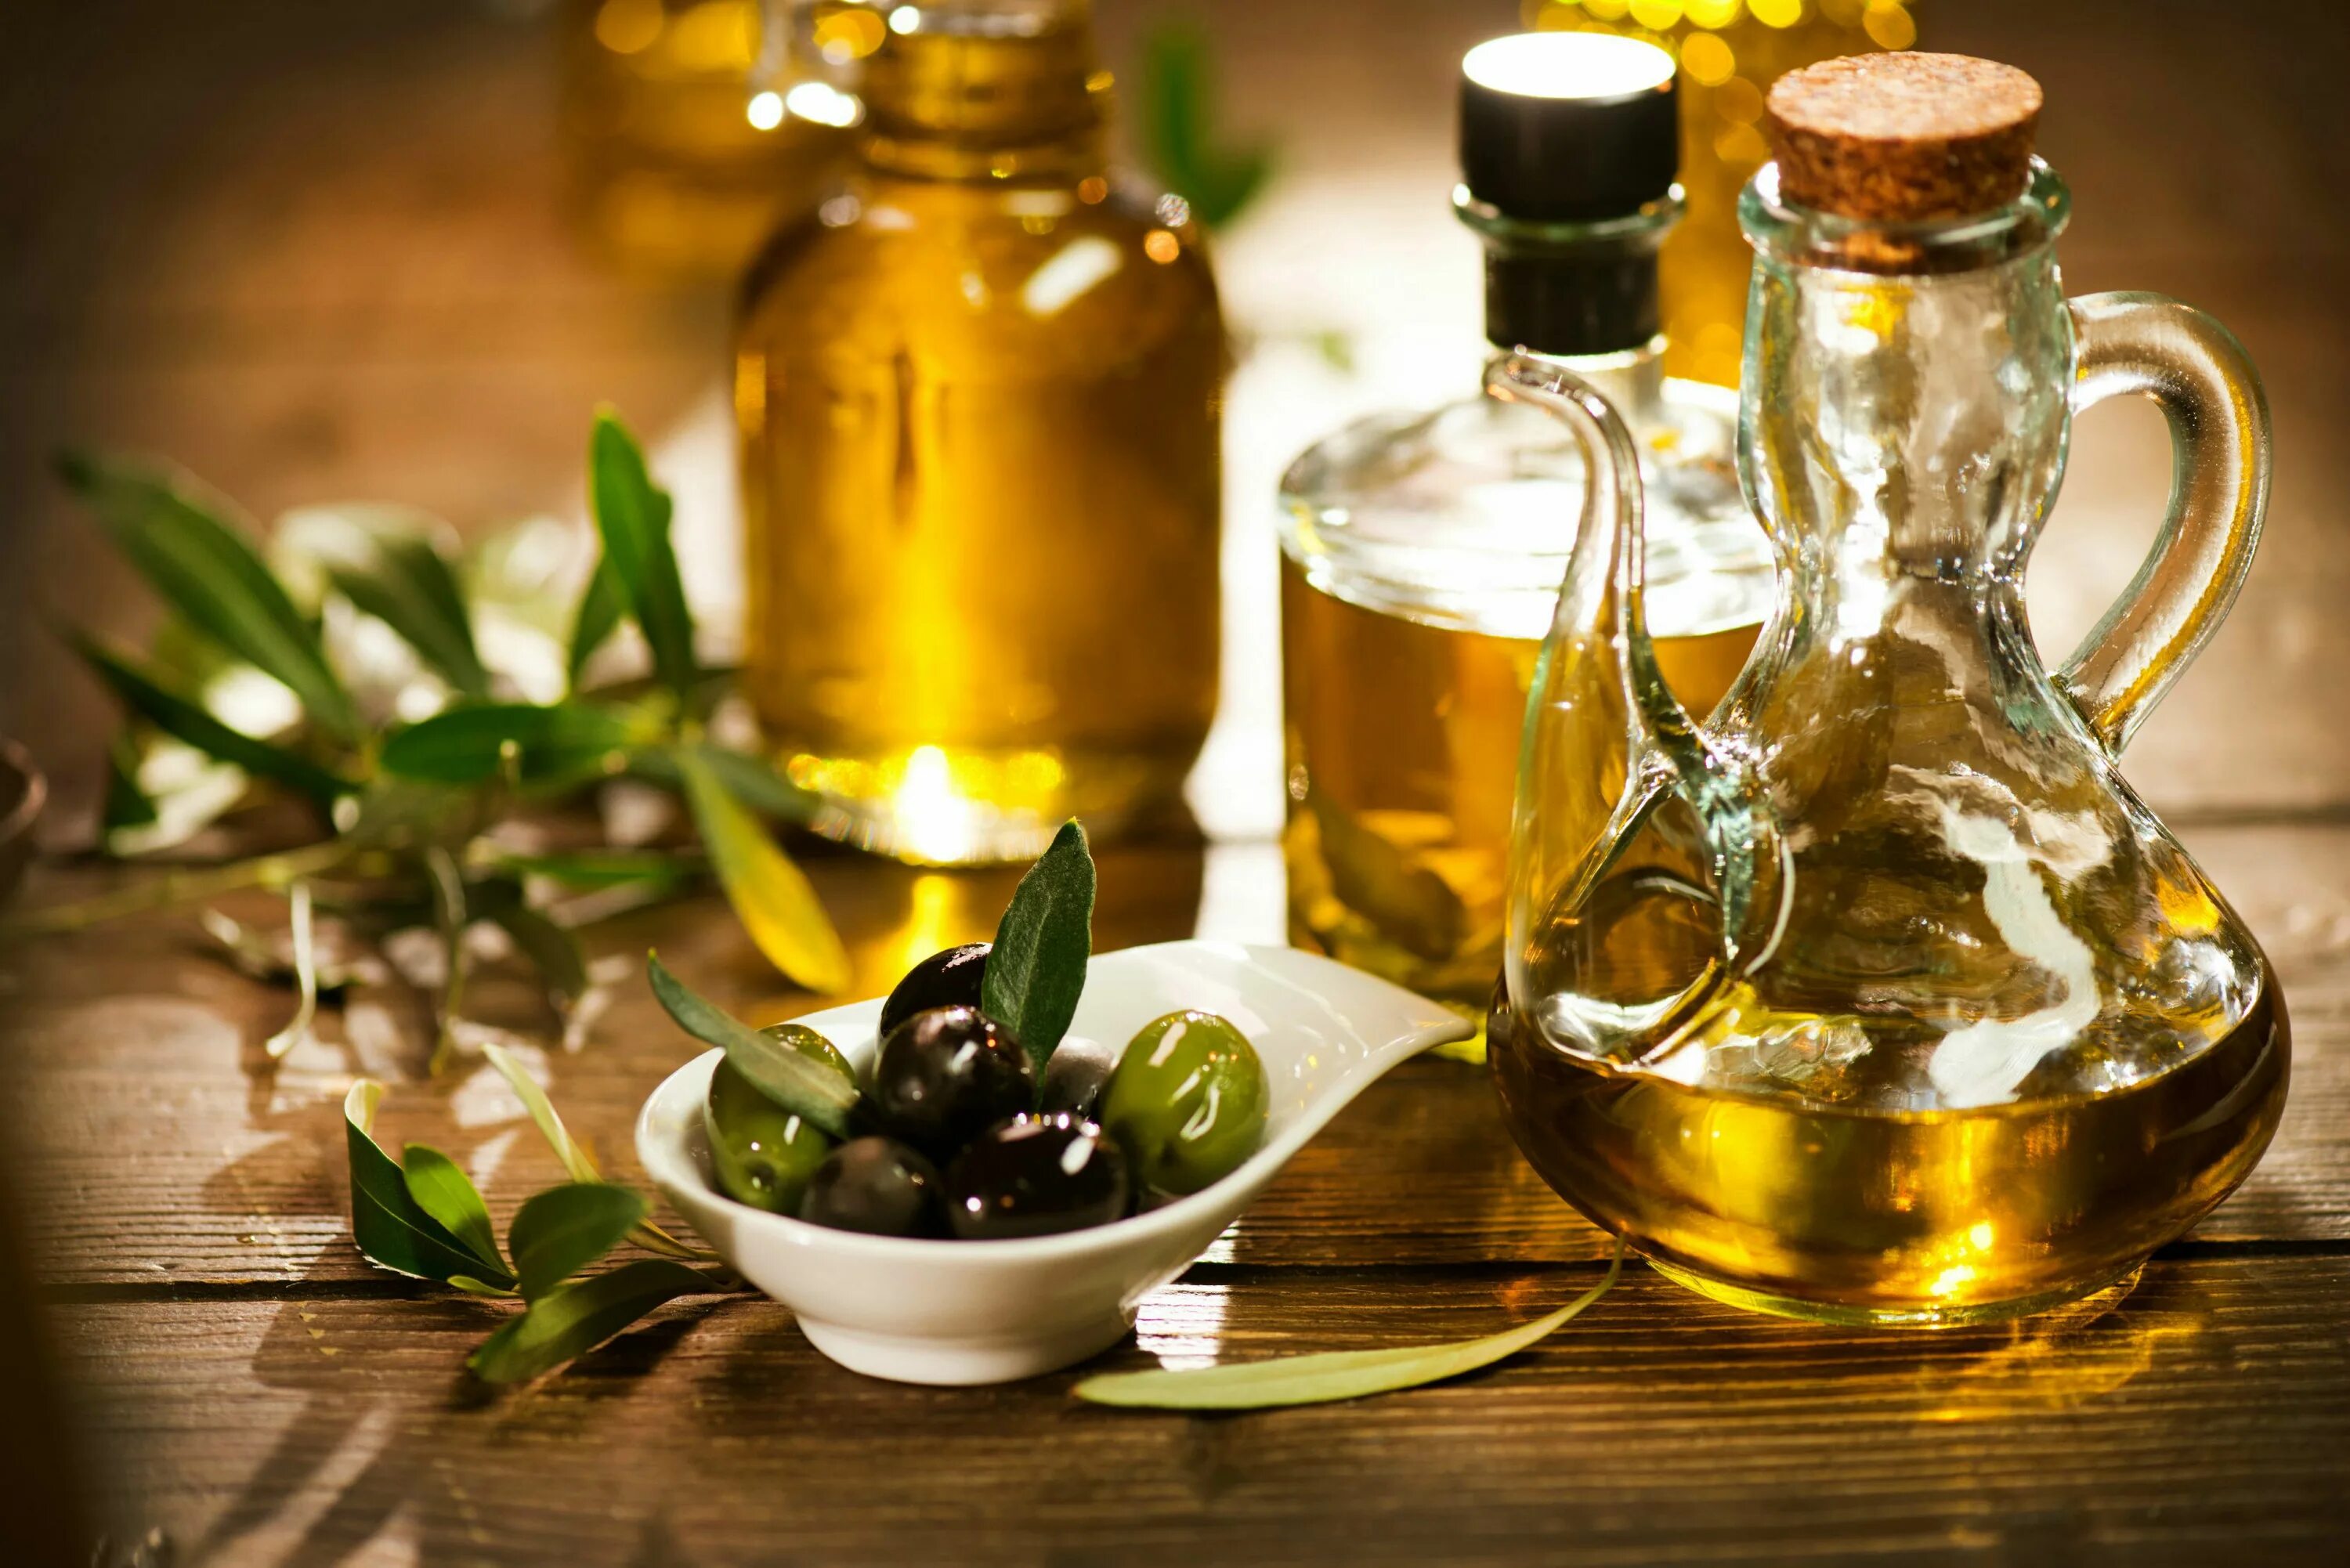 Olive Oil масло оливковое. Олив Ойл масло оливковое. Масло растительное с оливковым. Оливки и оливковое масло. Афинам масла